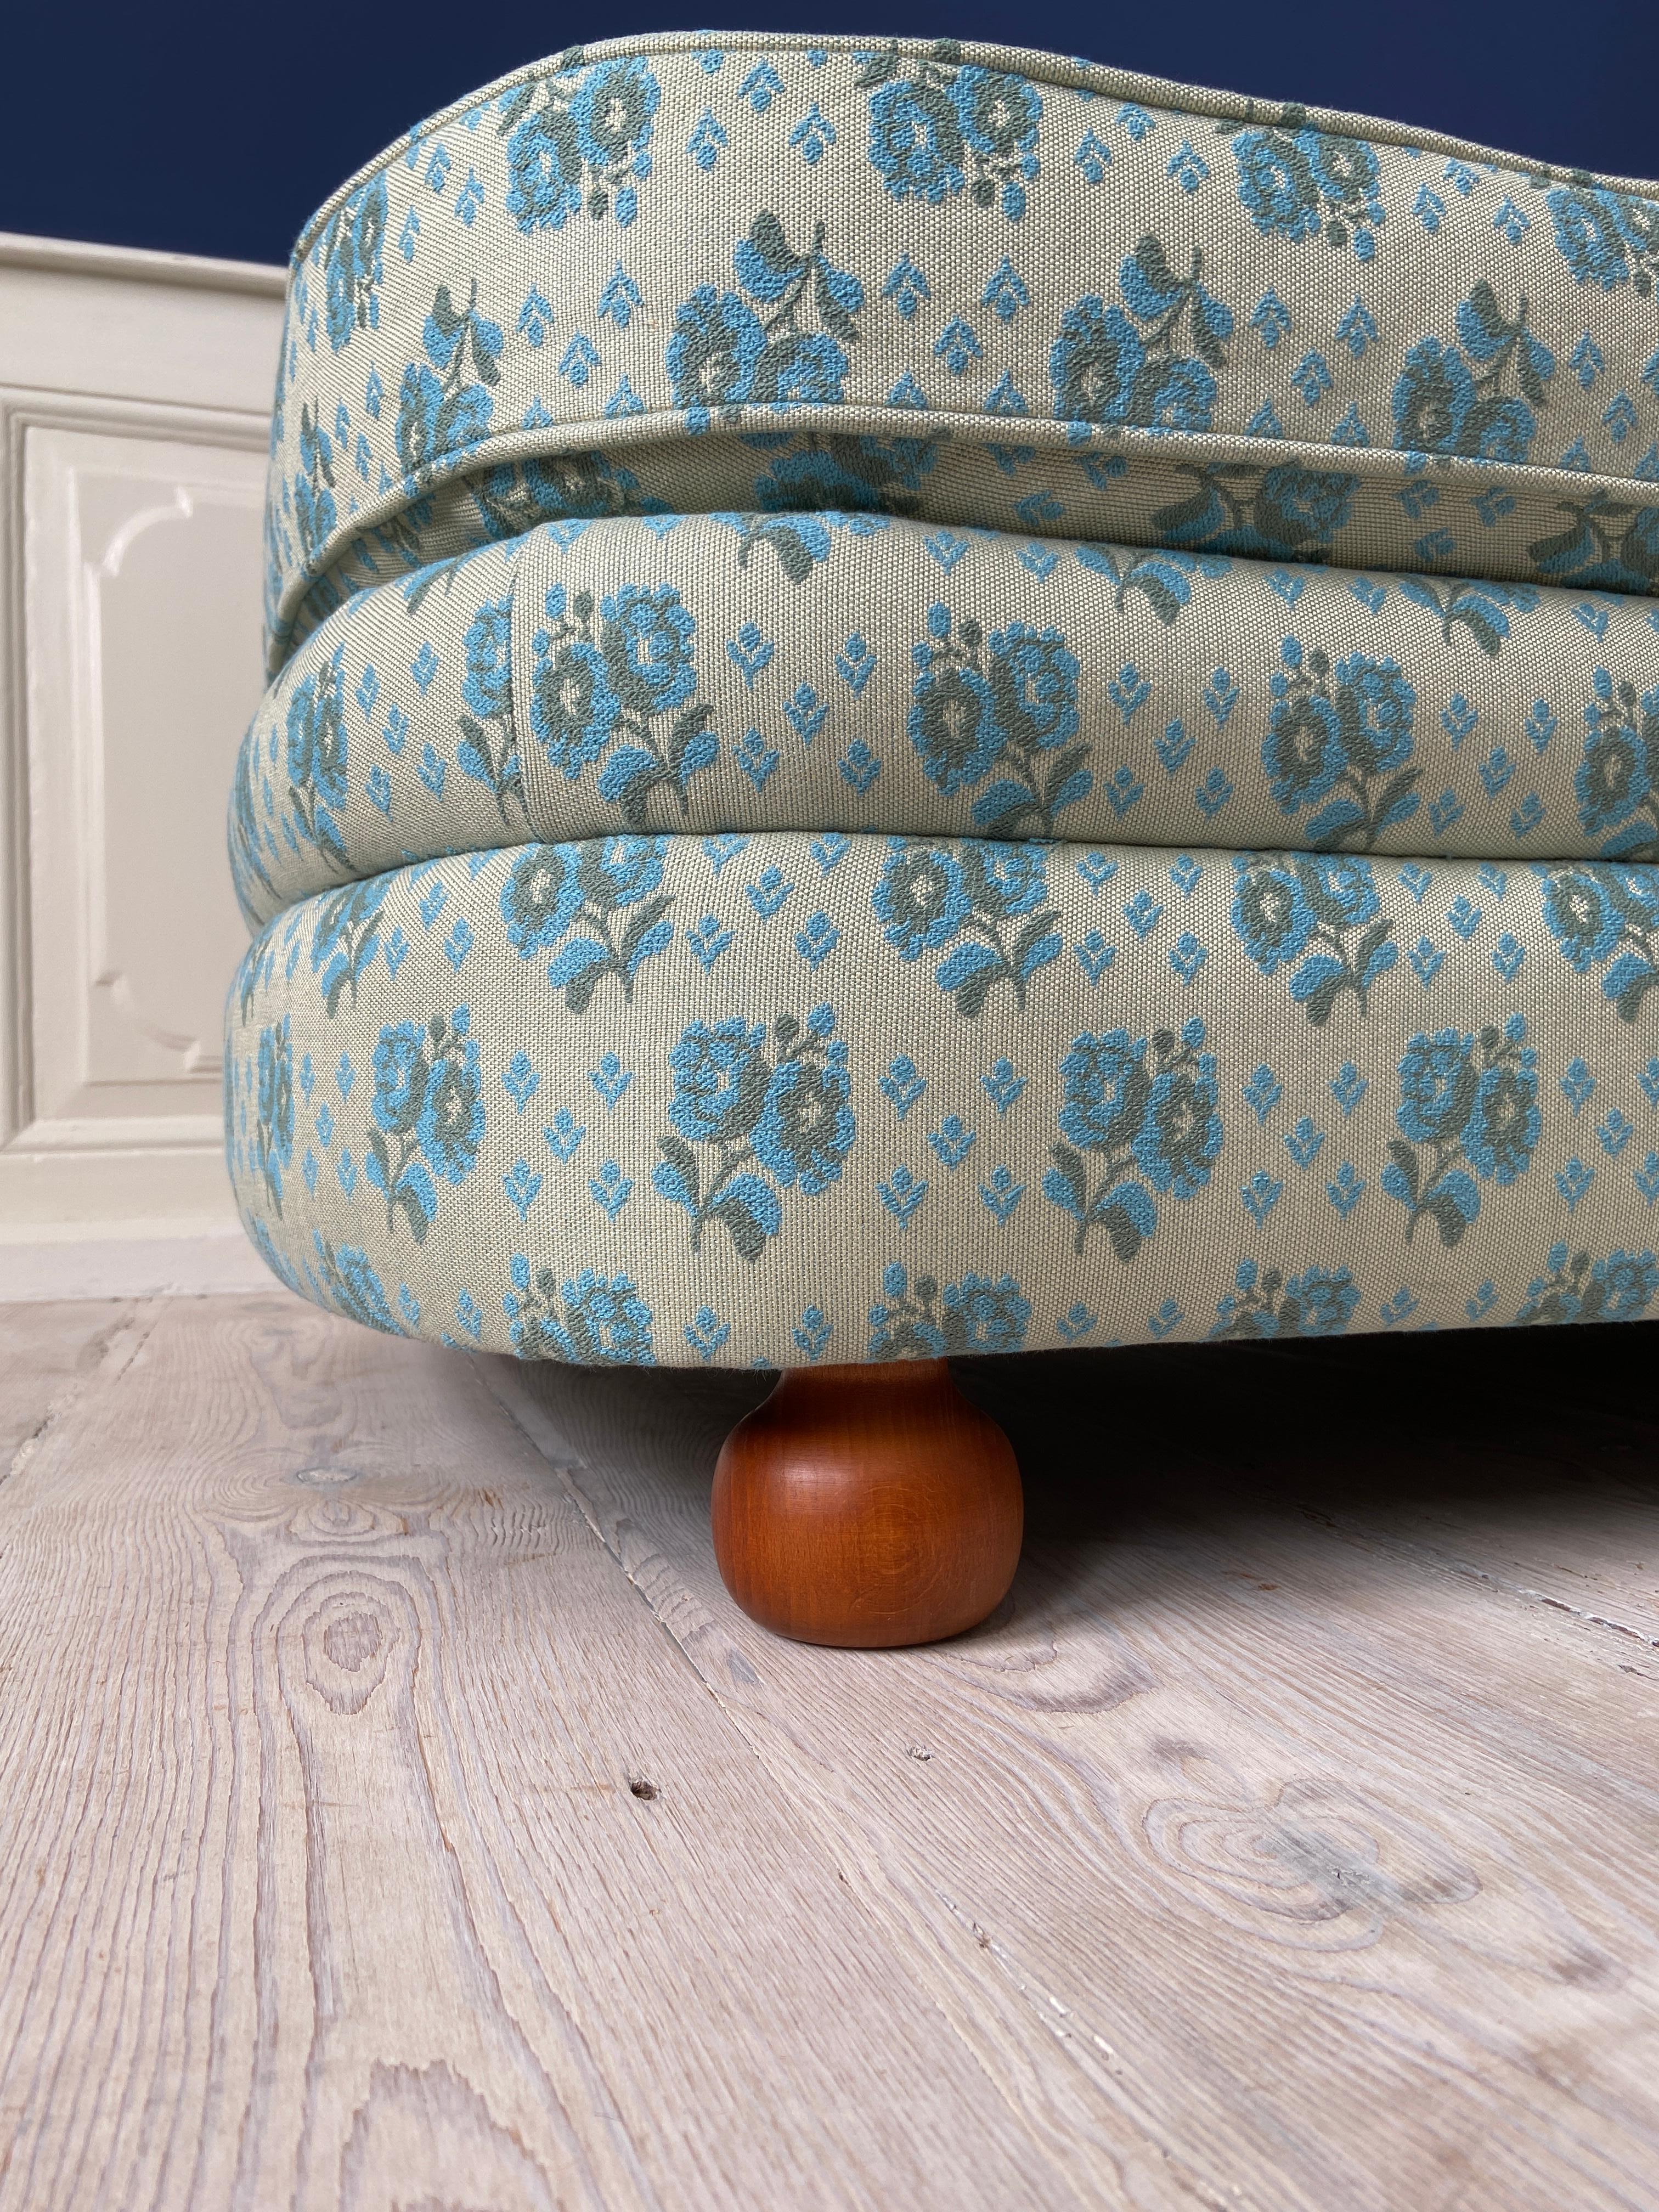 Textile Contemporary Upholstered Svenskt Tenn Daybed Designed by Josef Frank, Sweden